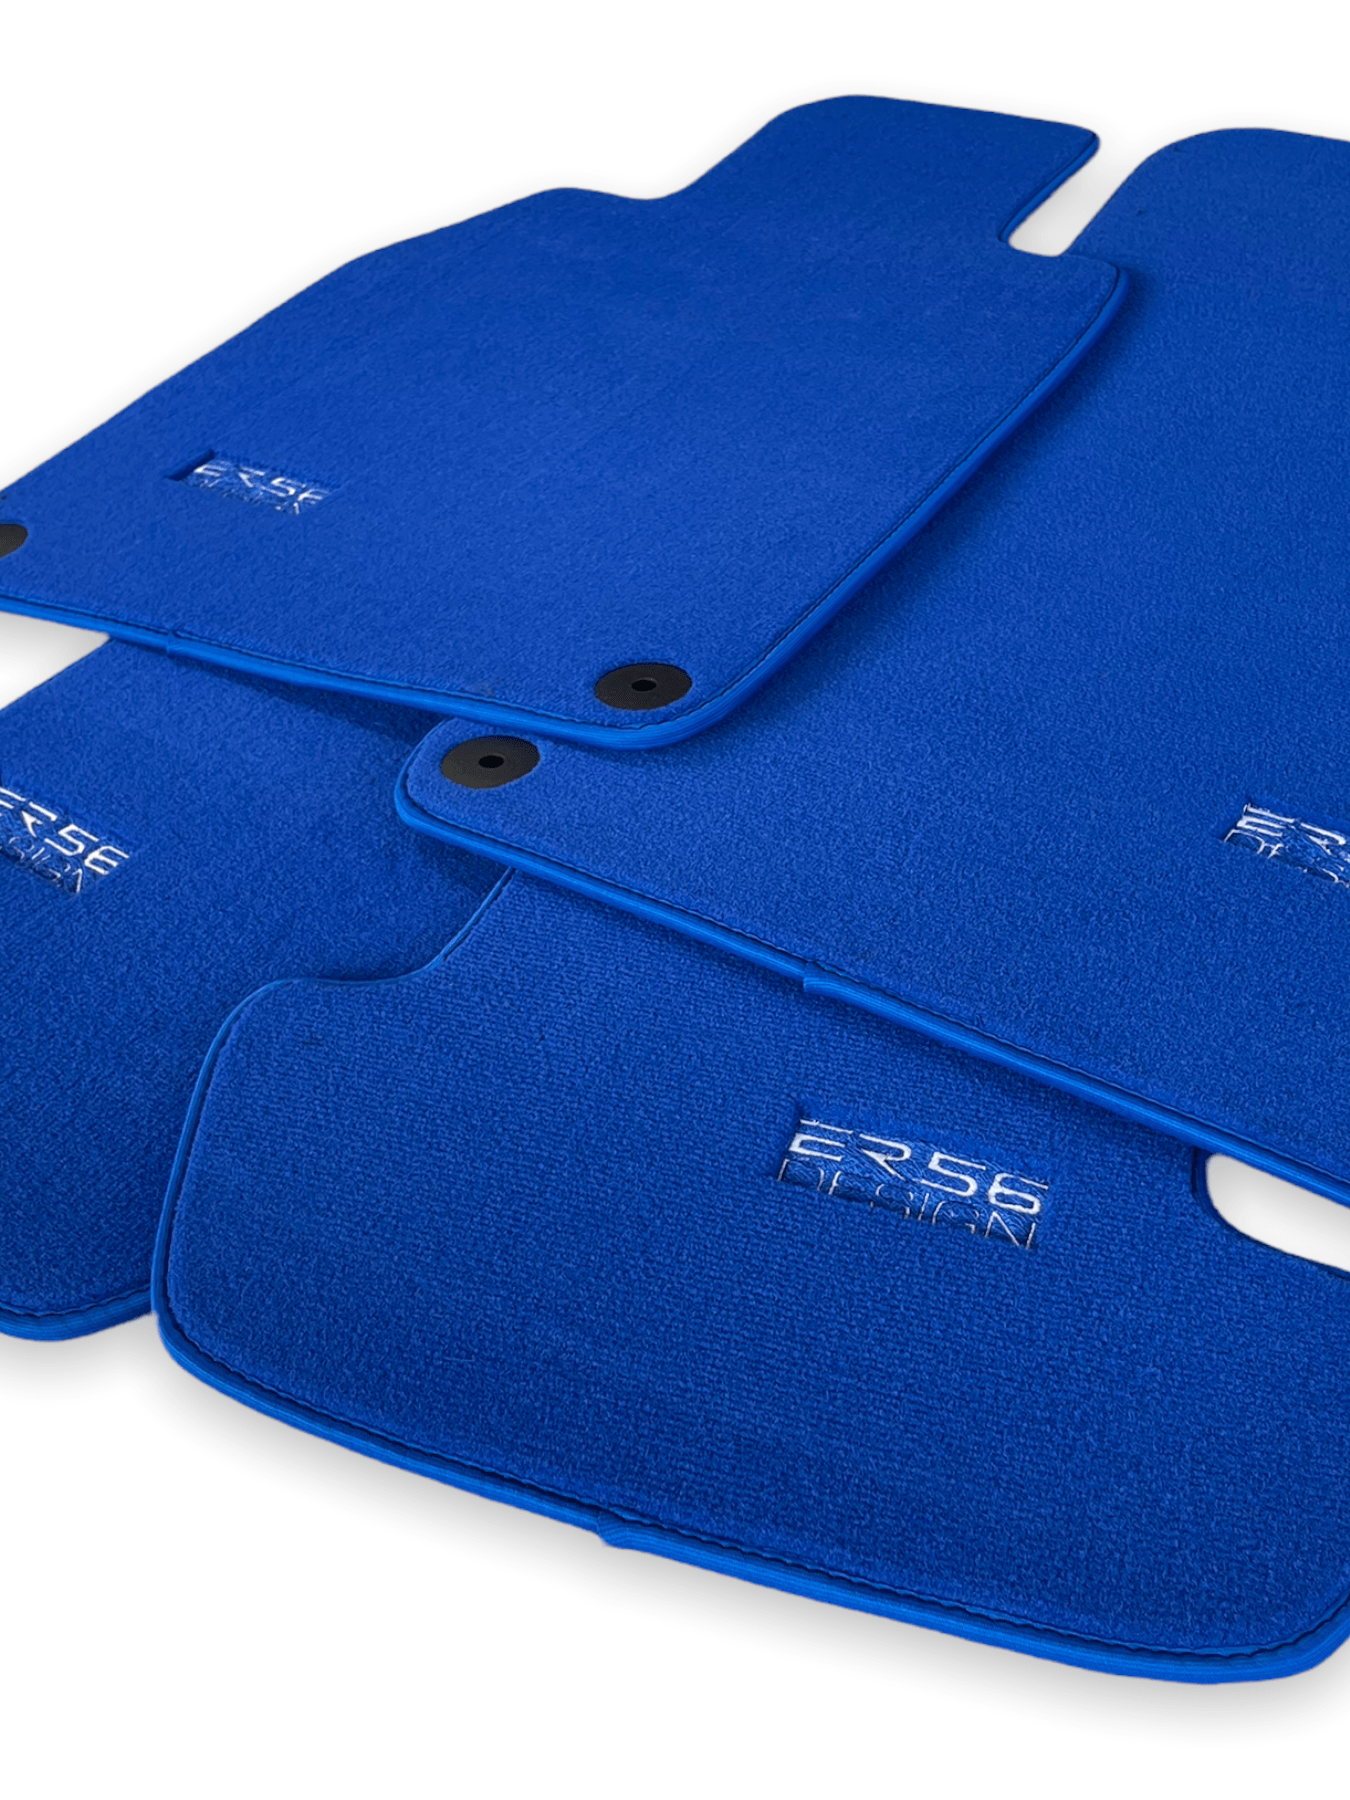 Blue Floor Mats for Porsche Cayenne (2010-2018) | ER56 Design - AutoWin